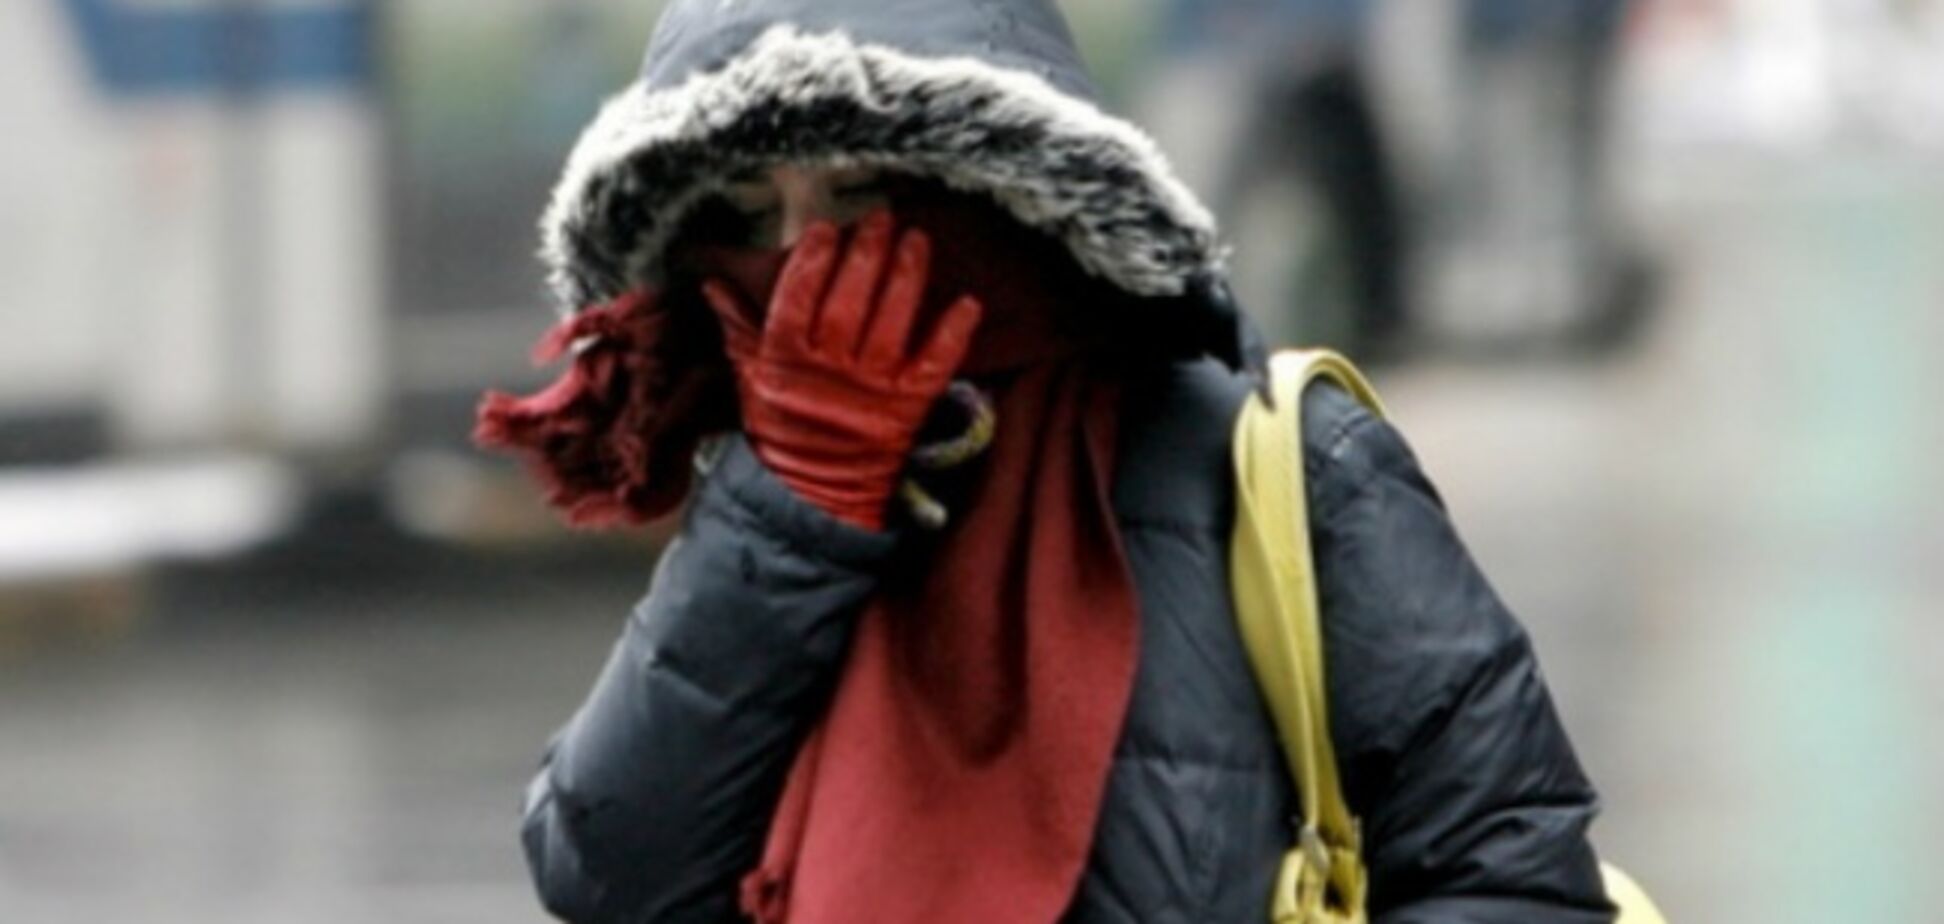 Кутайте носи: синоптик попередила про сильні морози в Києві